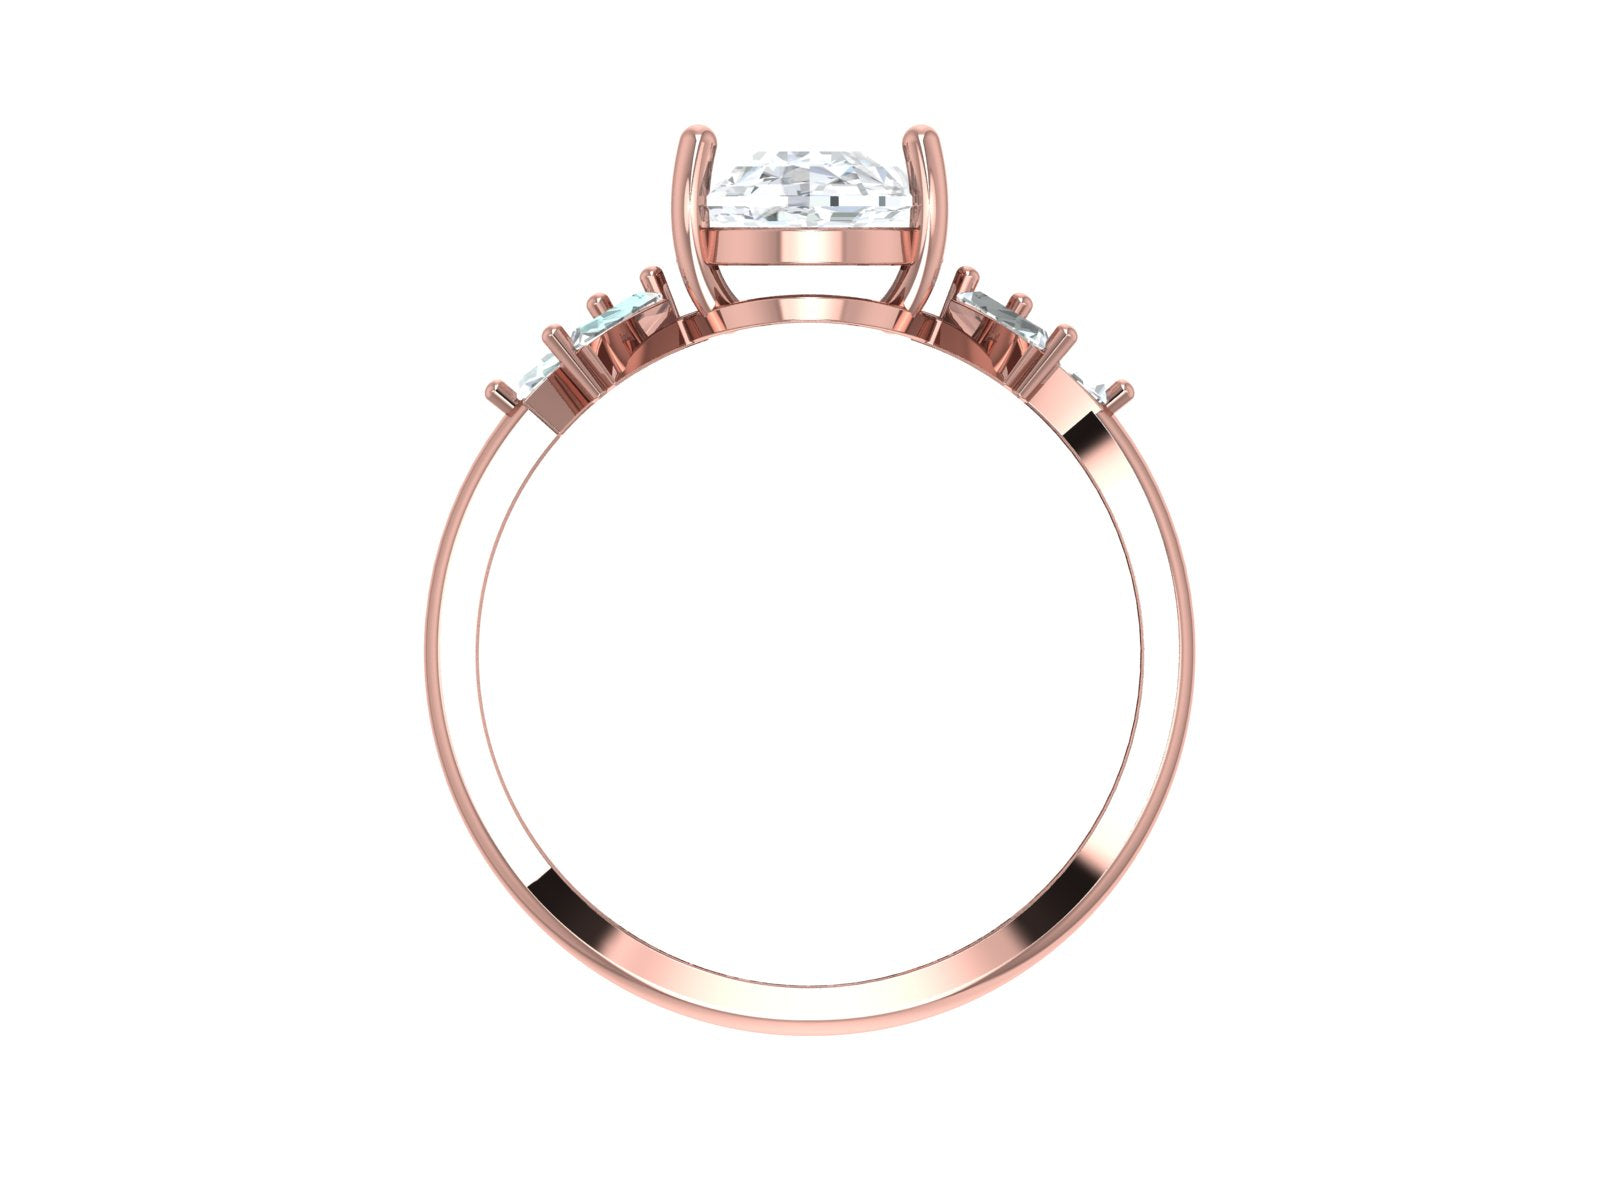 Oval Moissanite engagement ring